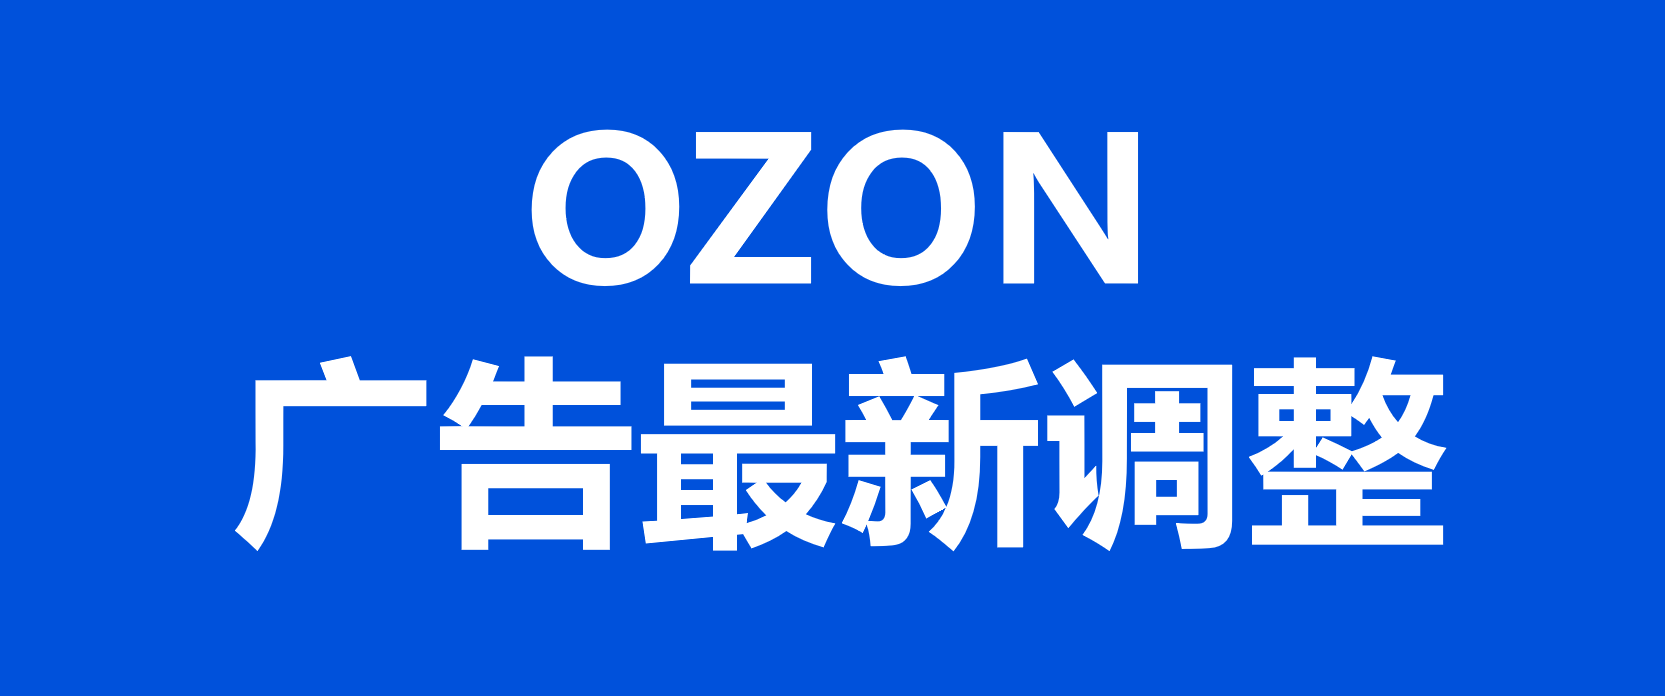 俄罗斯OZON平台广告功能最新调整优化